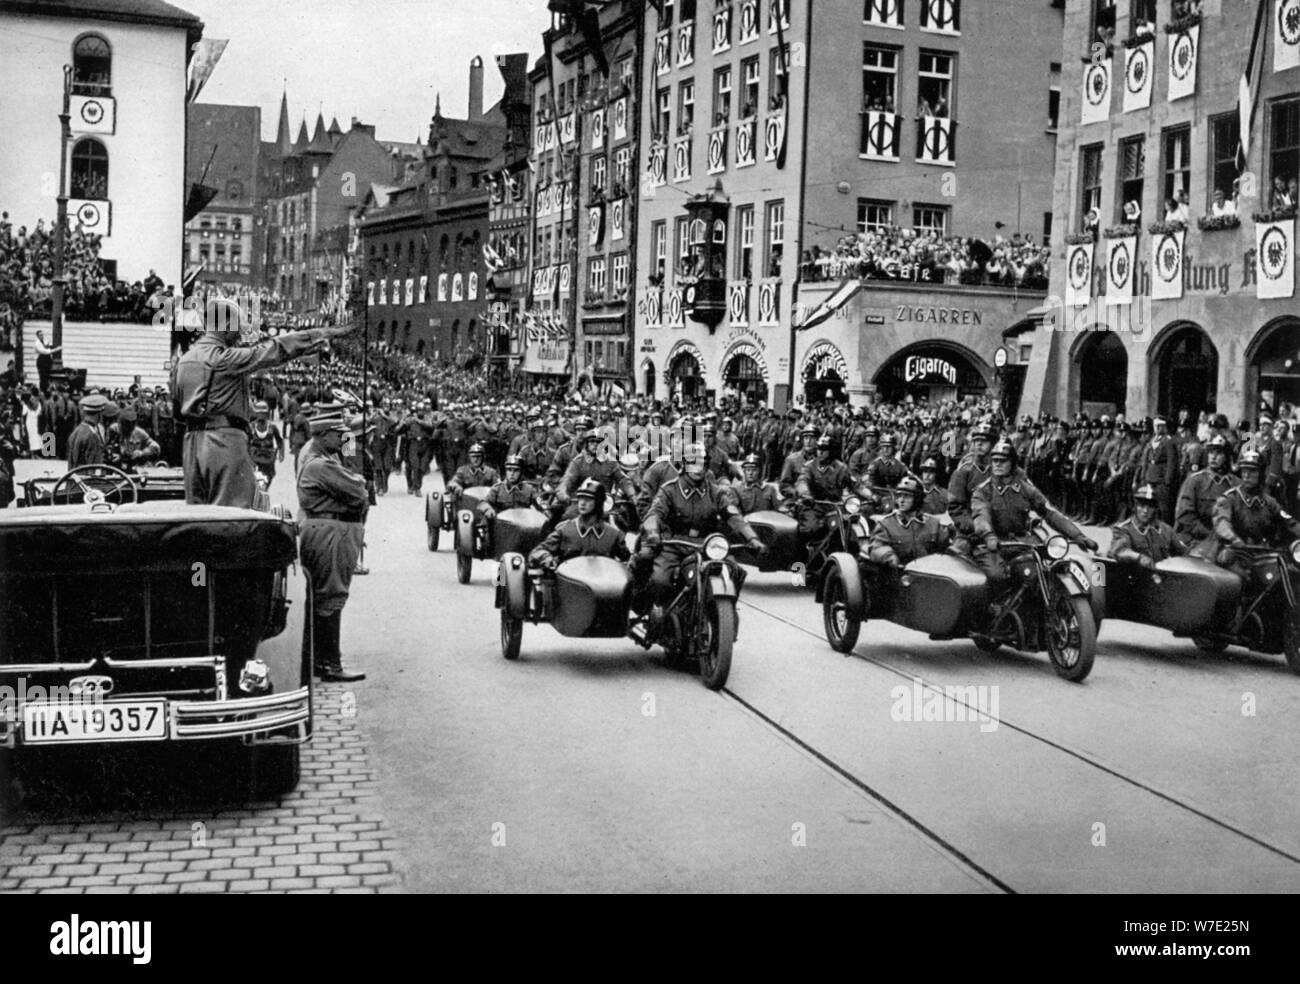 Revue des troupes d'Adolf Hitler à la moto de Nuremberg, Allemagne, 1935. Artiste : Inconnu Banque D'Images